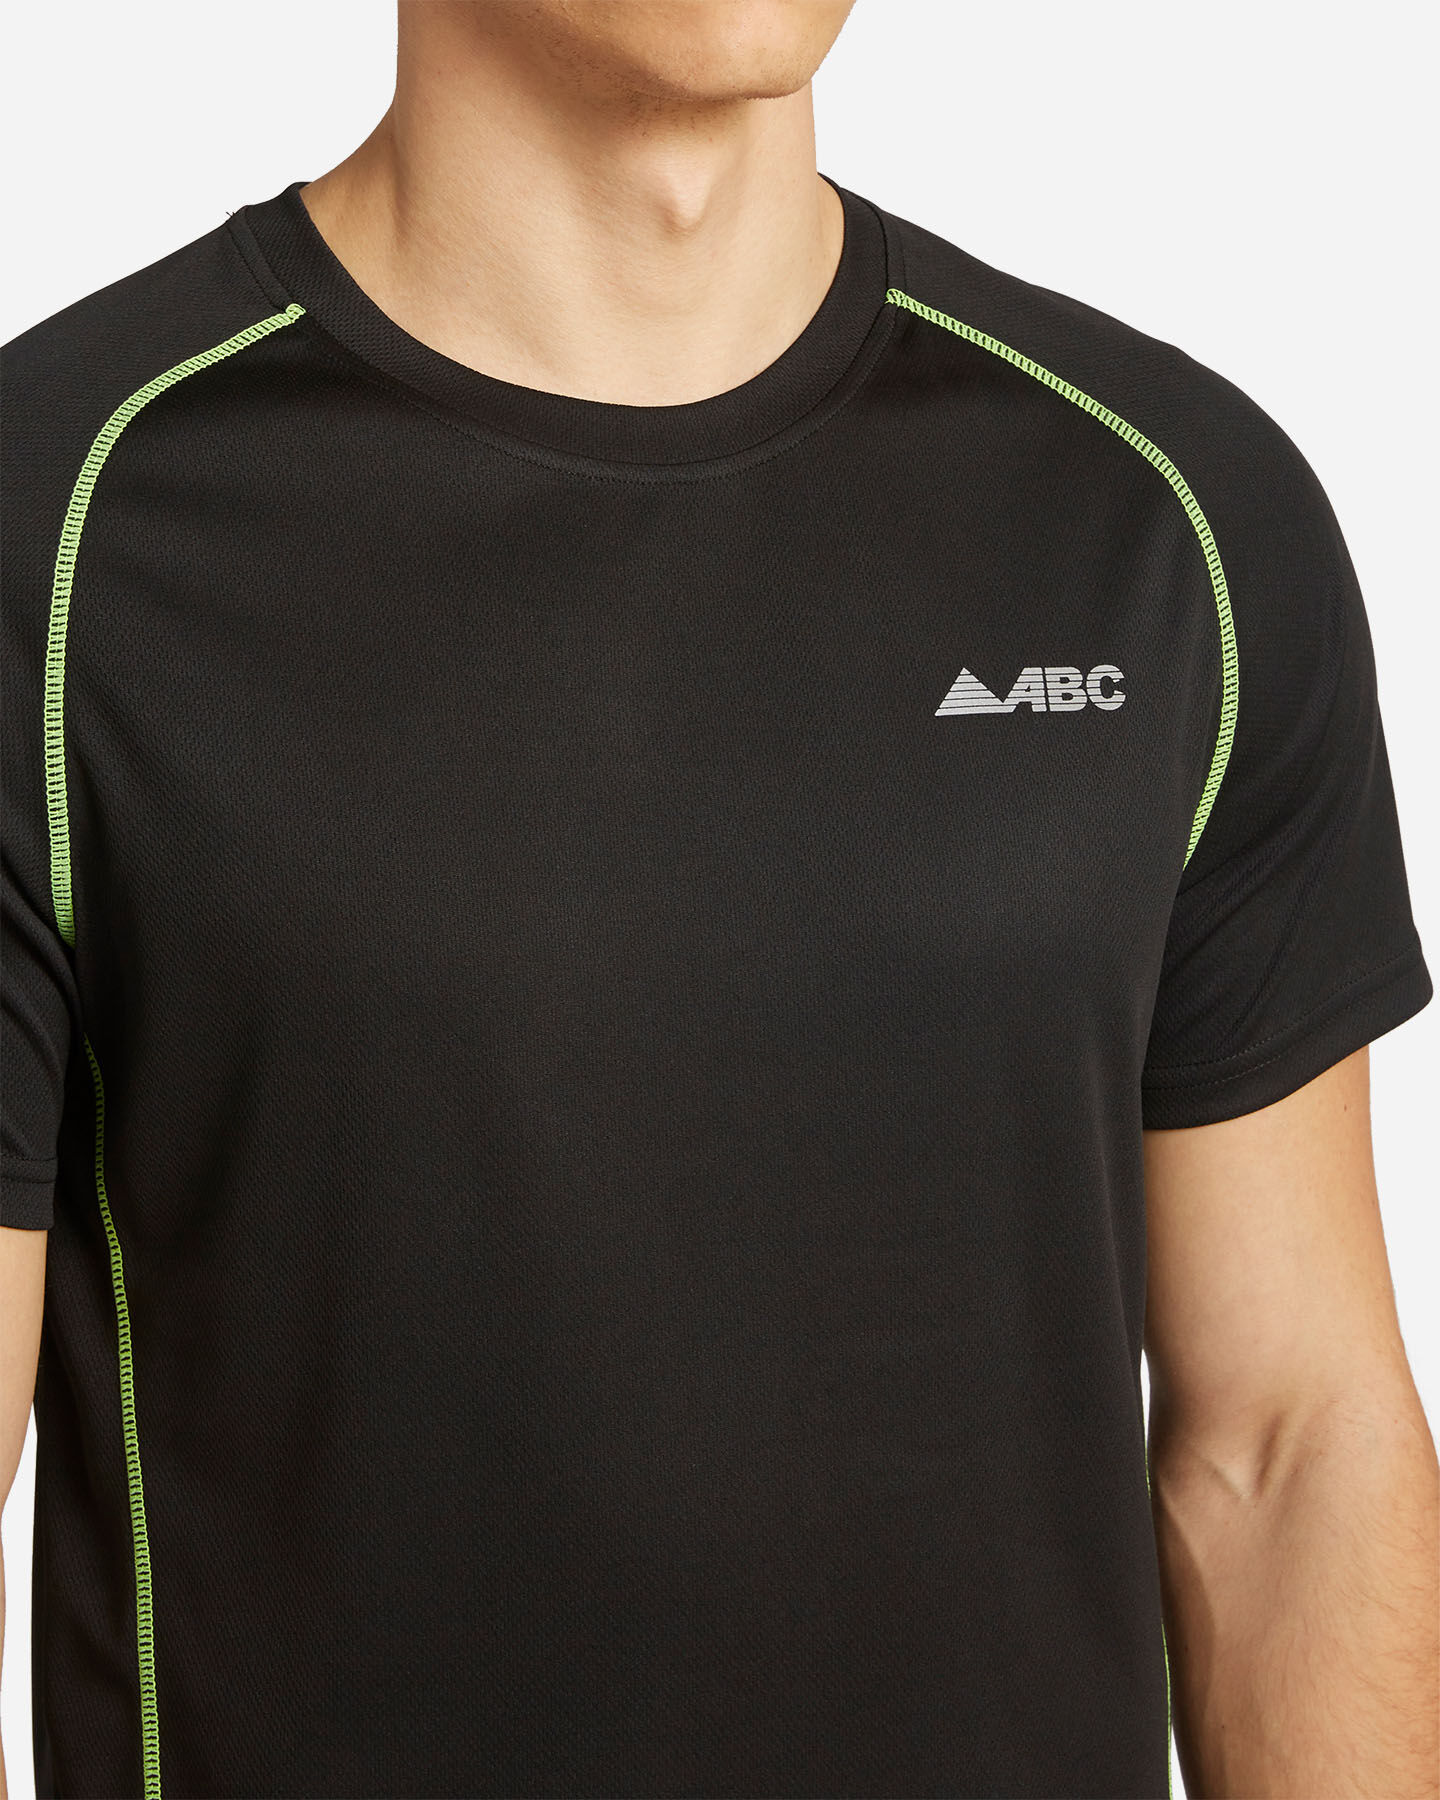  T-Shirt running ABC RUN M S4087981|050/1000|S scatto 4